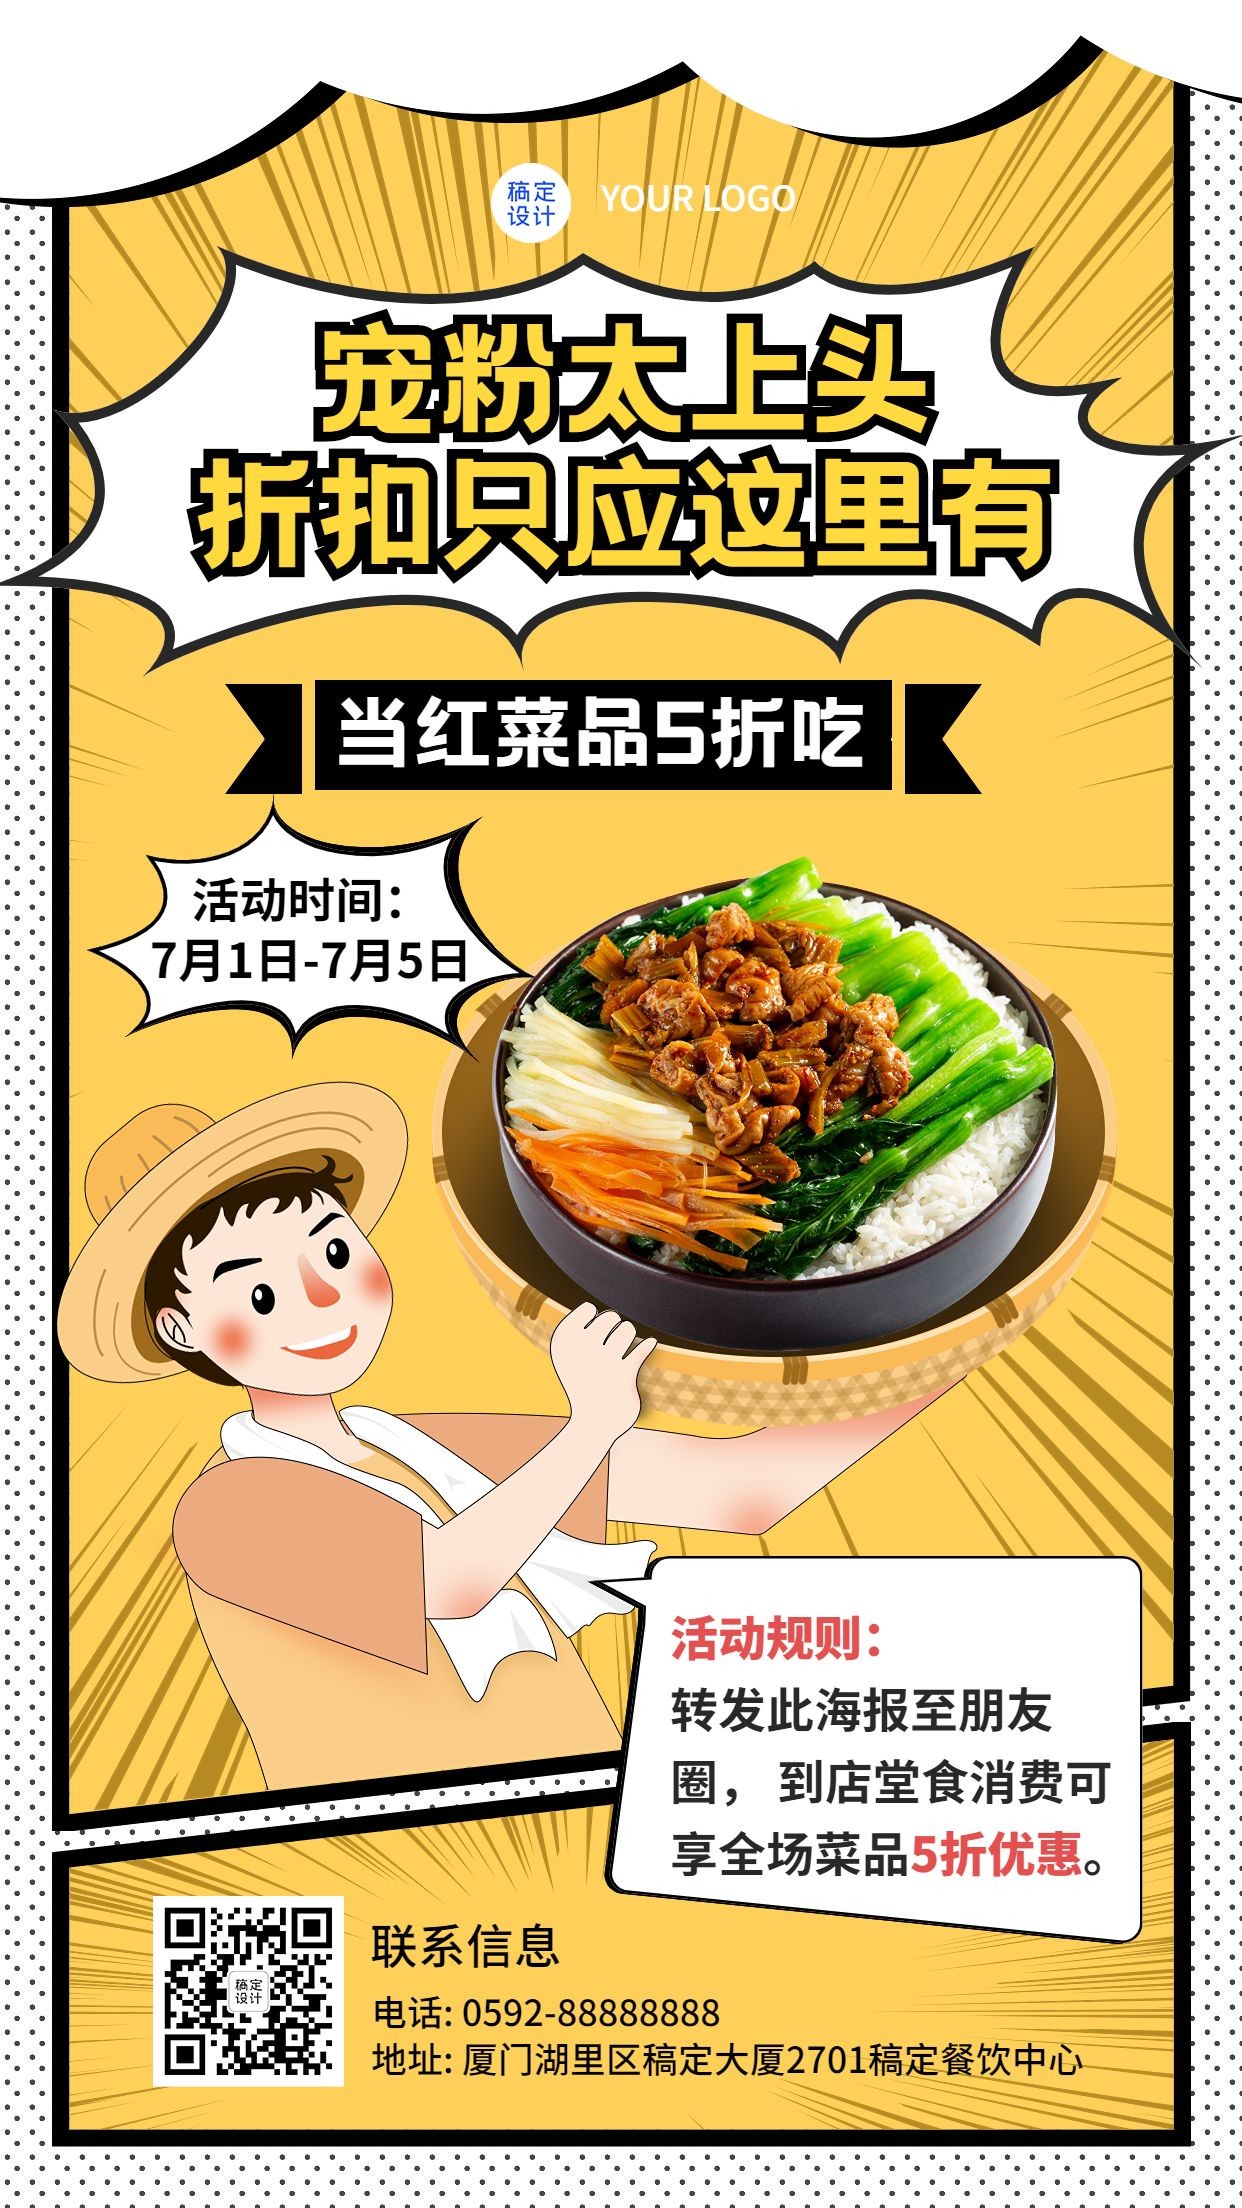 餐饮中餐厅限时折扣活动宣传插画手机海报